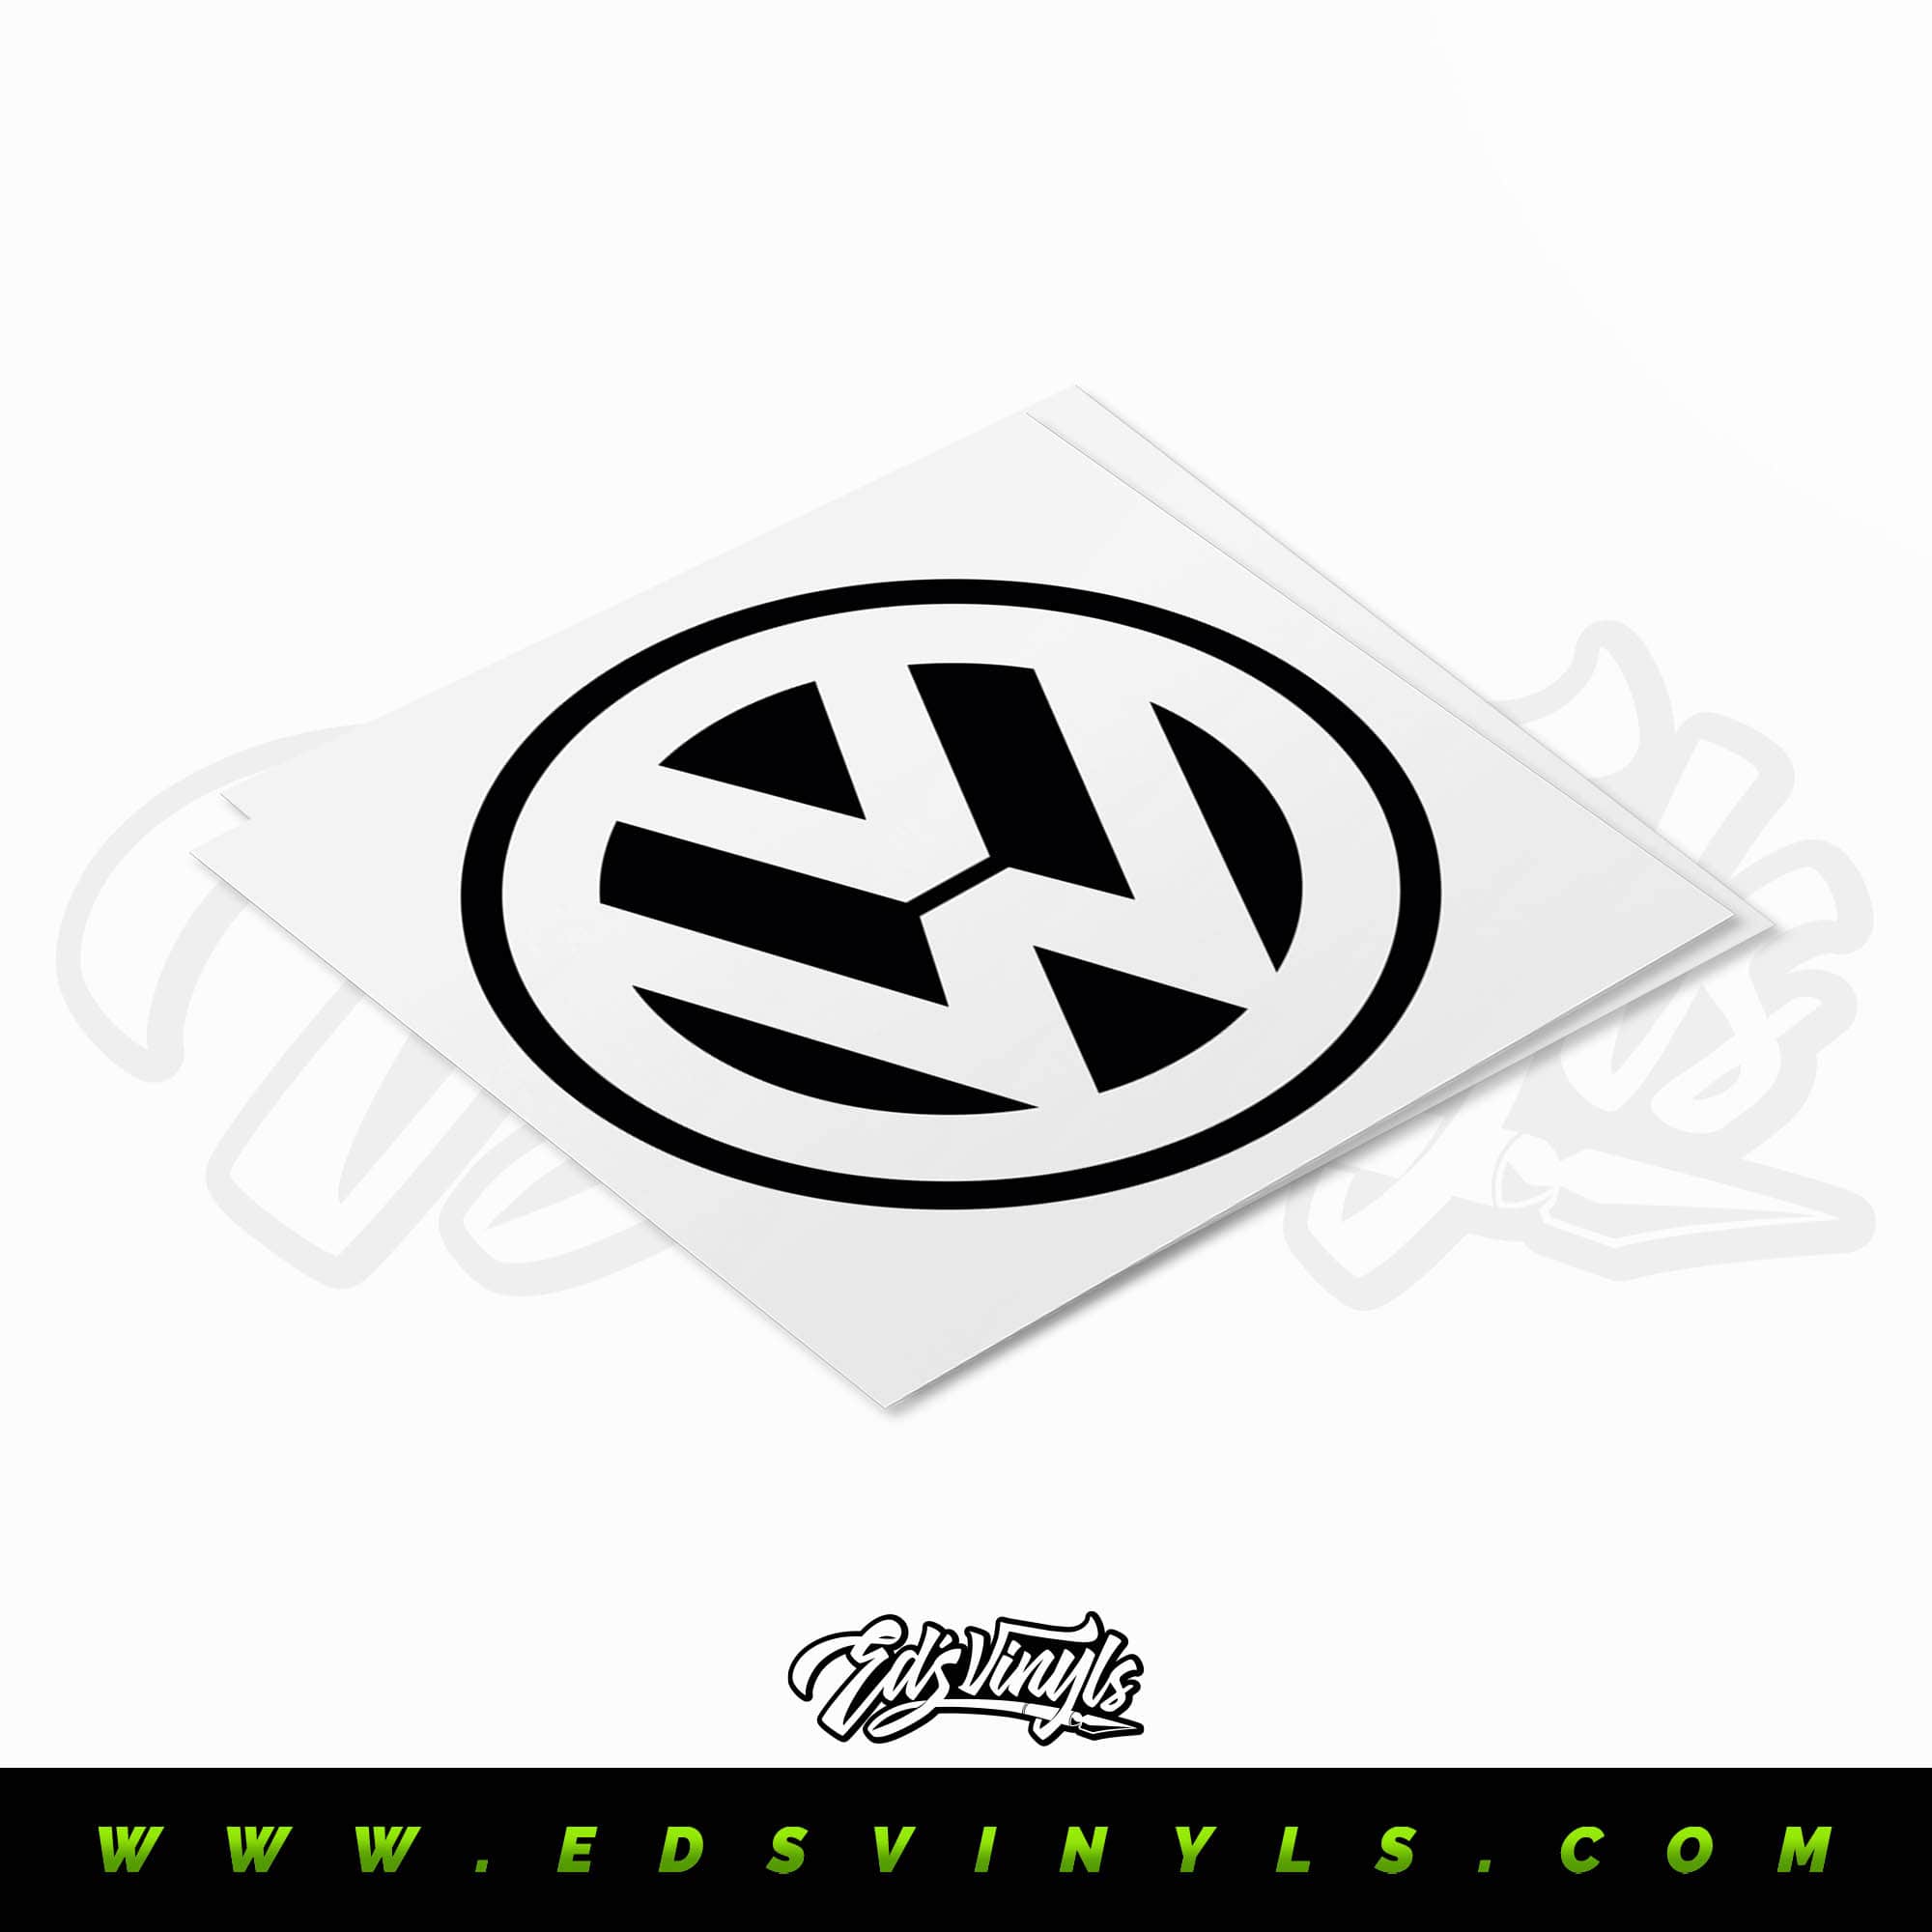 Volkswagen logo - Edsvinyls